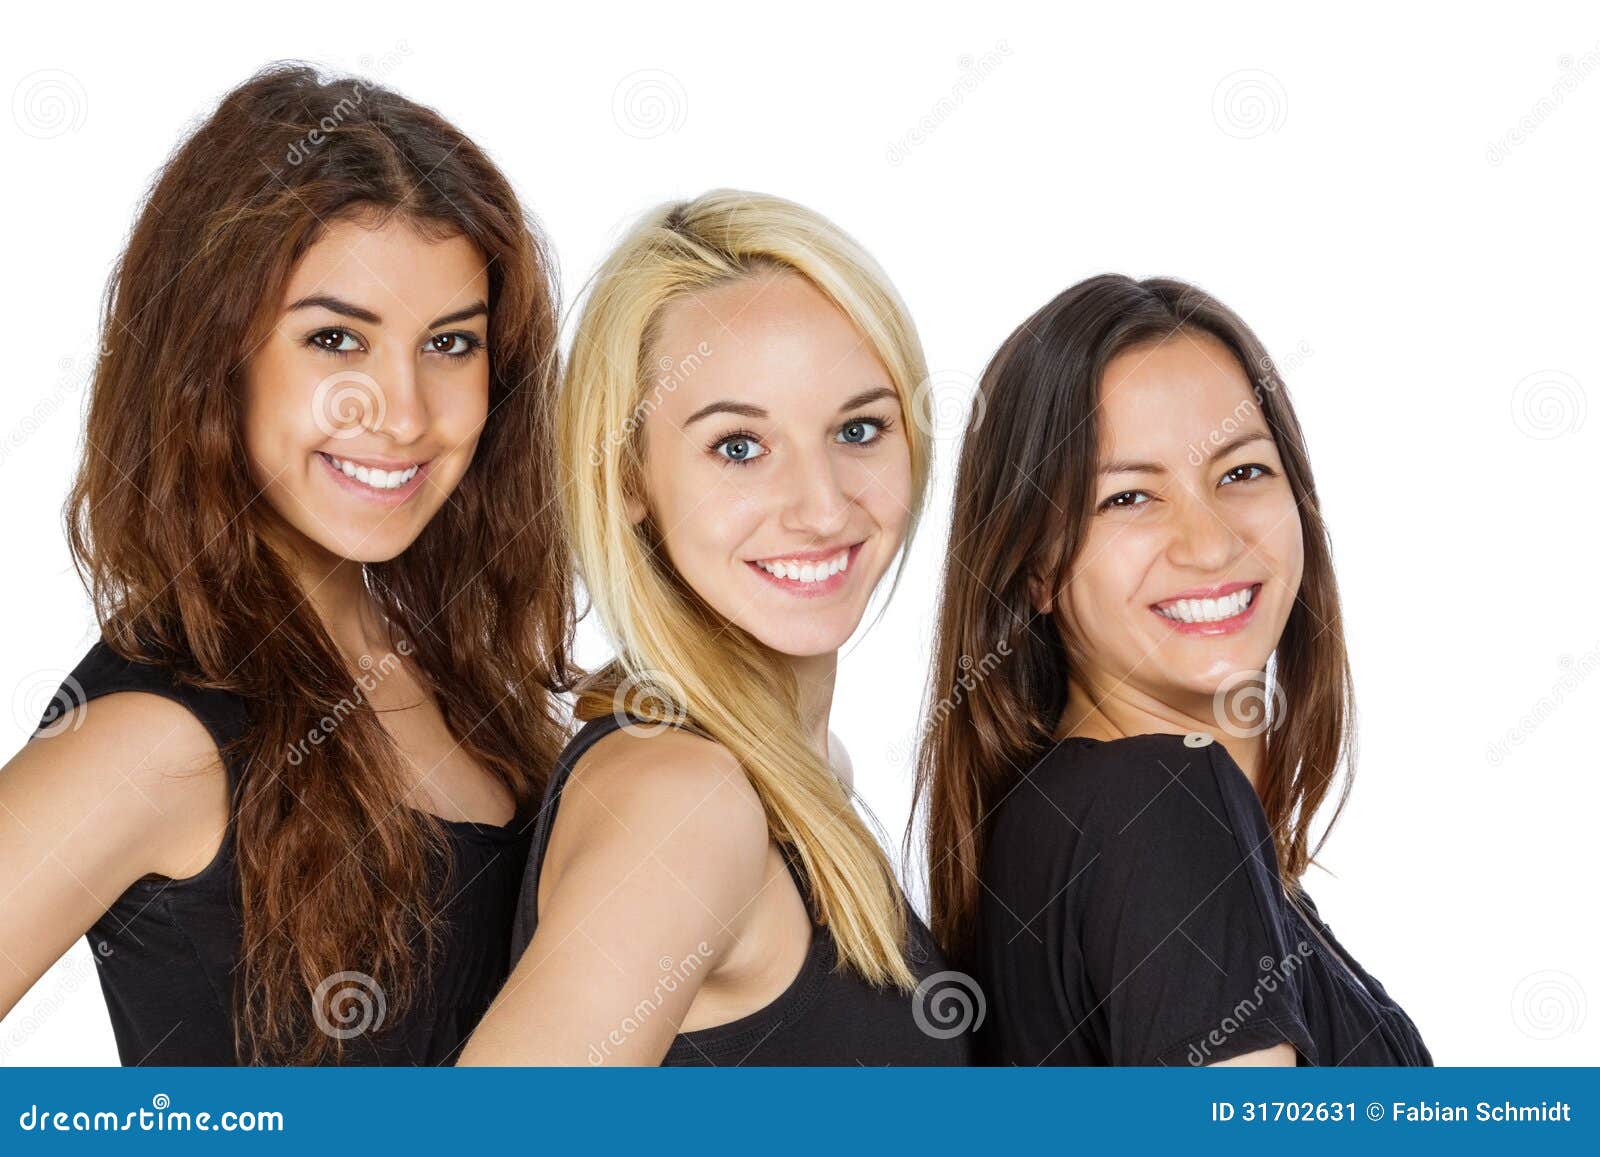 Рядом стоят 3 девушки. Три девушки рядом. Три девушки на белом фоне. 3 Девушки стоят. Фотосессия три девушки белый фон.